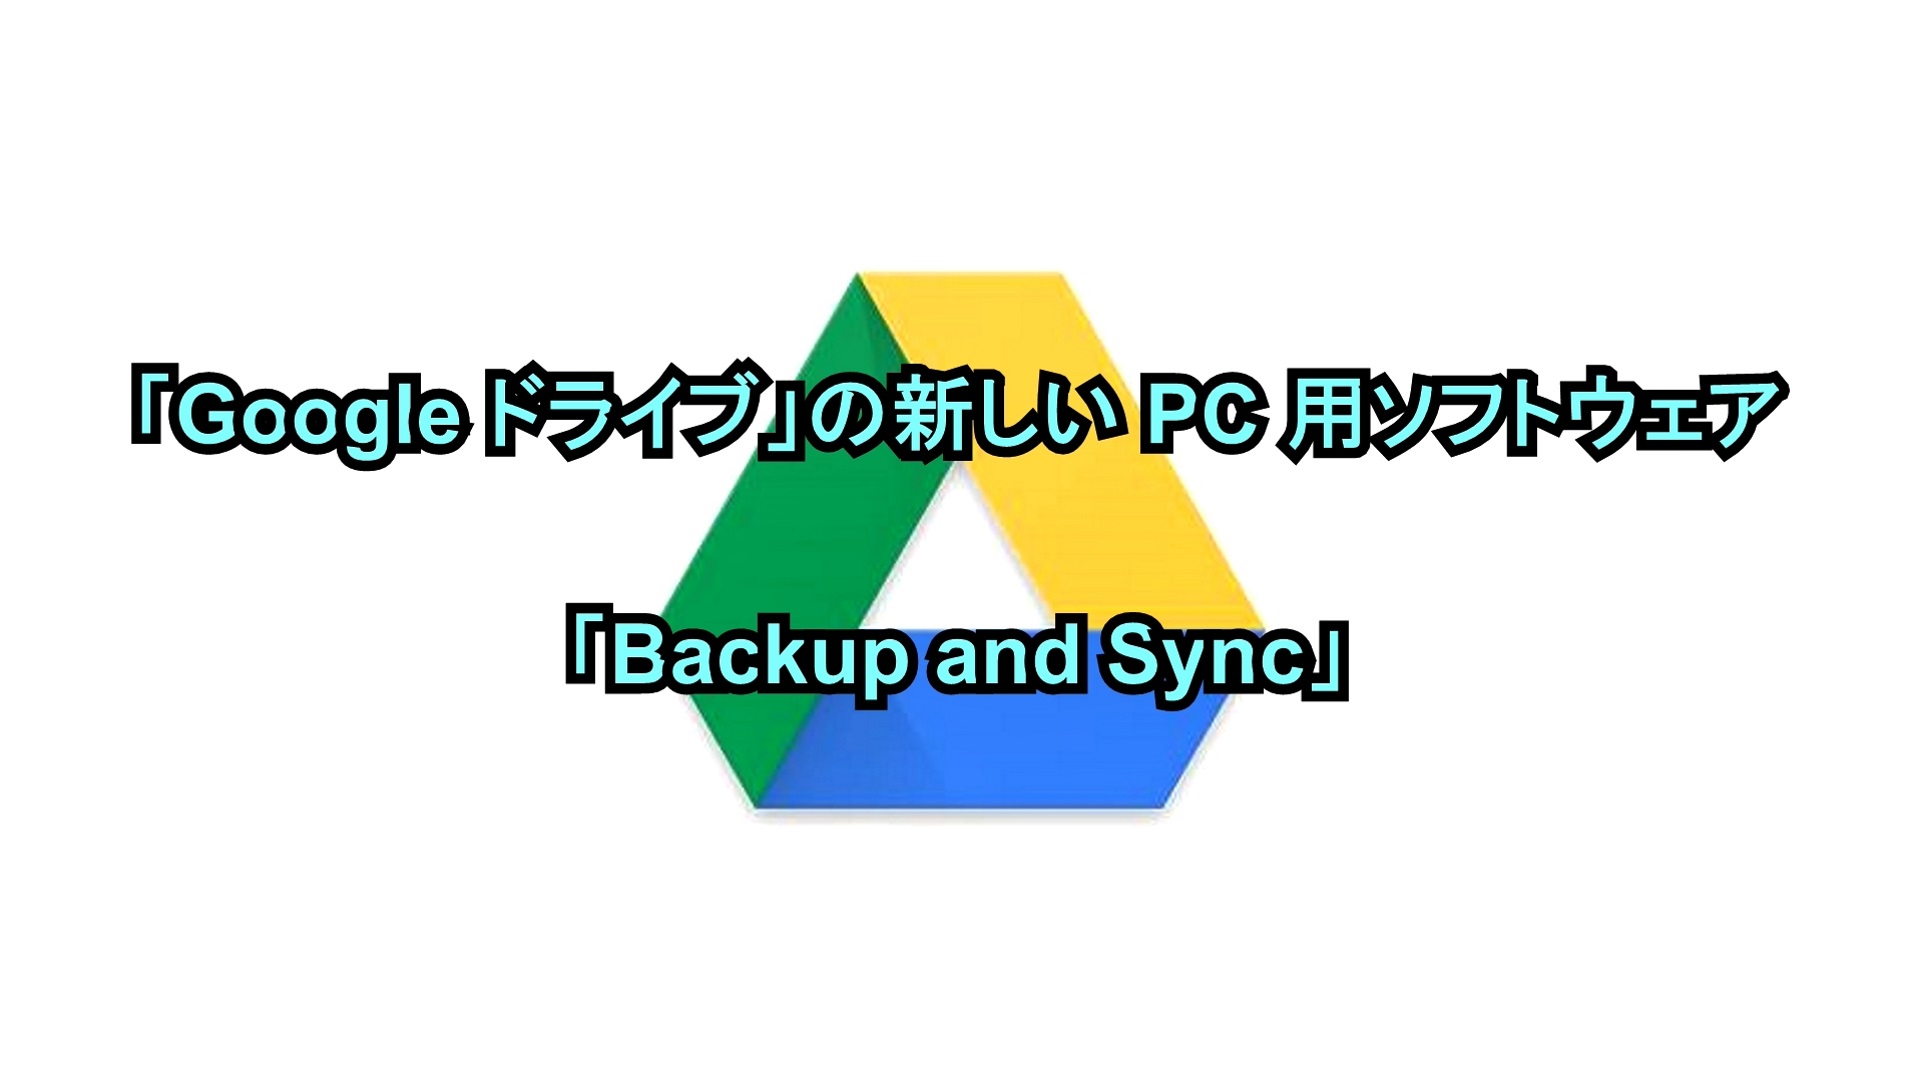 「Google ドライブ」の新しいPC用ソフトウェア「Backup and Sync」